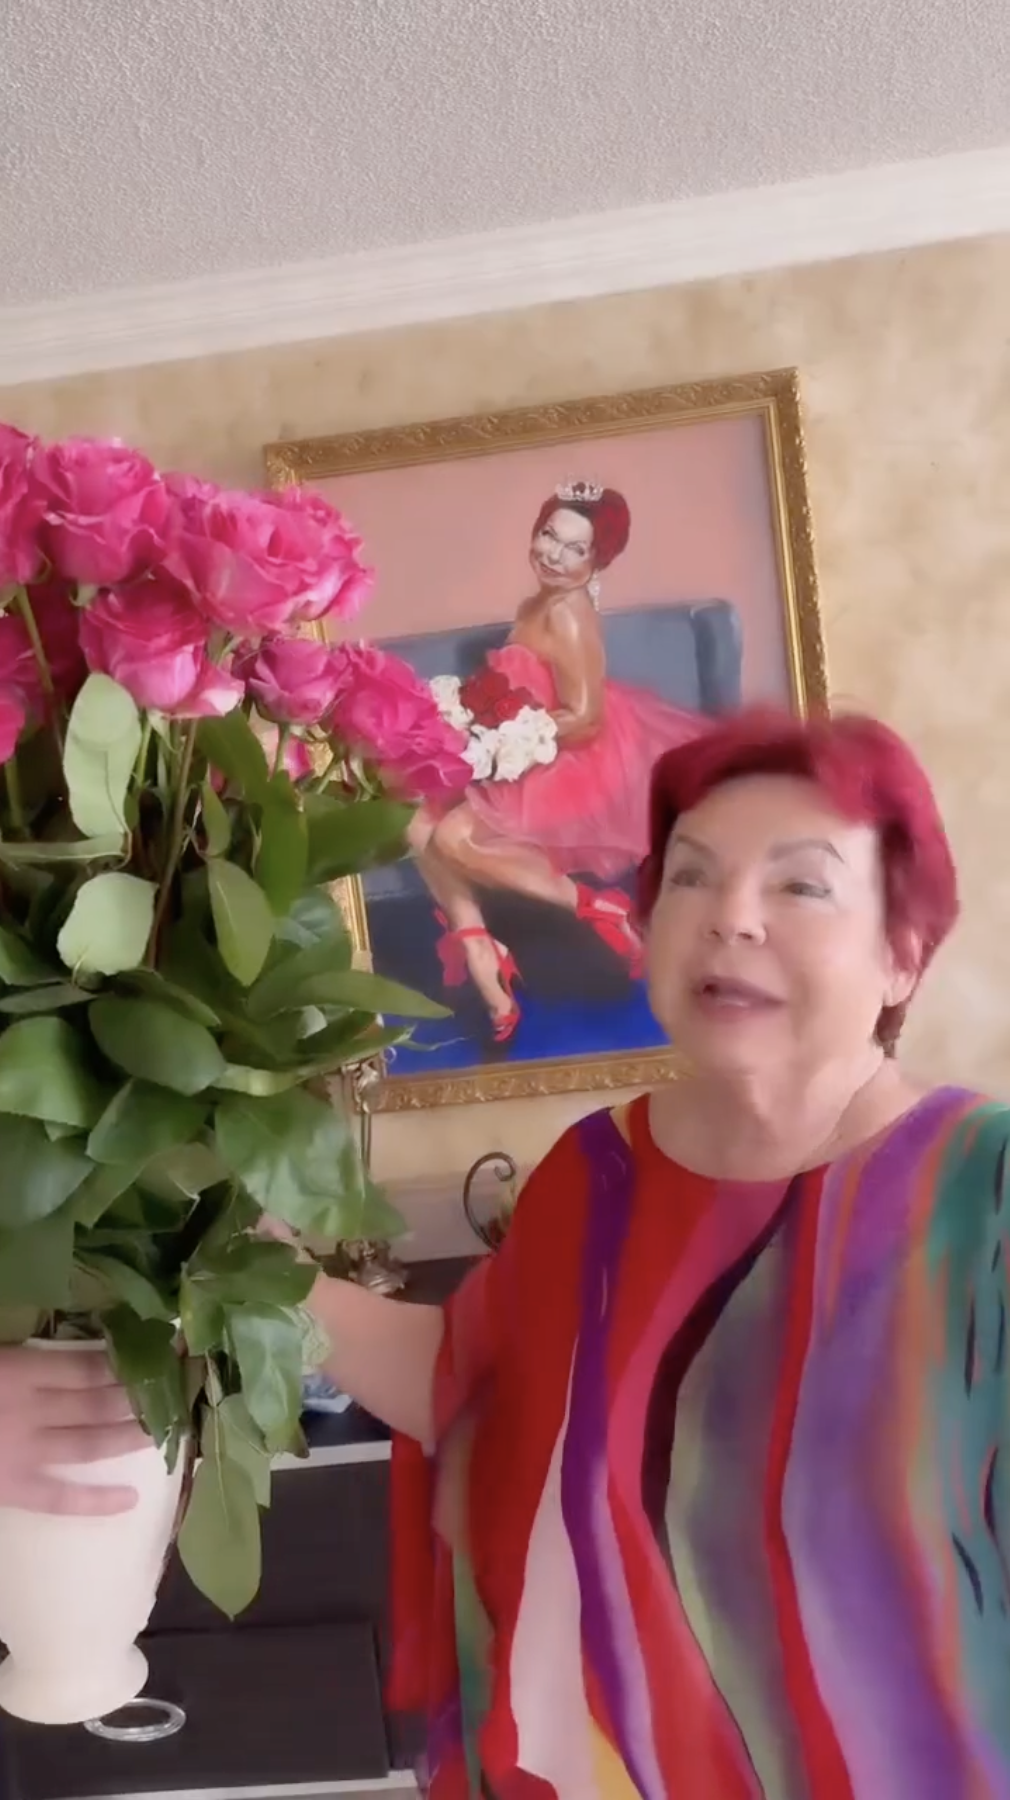 Мама Наташи Королевой, которая еще недавно кричала "Слава Украине!" и насмехалась над зятем-путинистом, показала свое истинное отношение к Тарзану. Видео